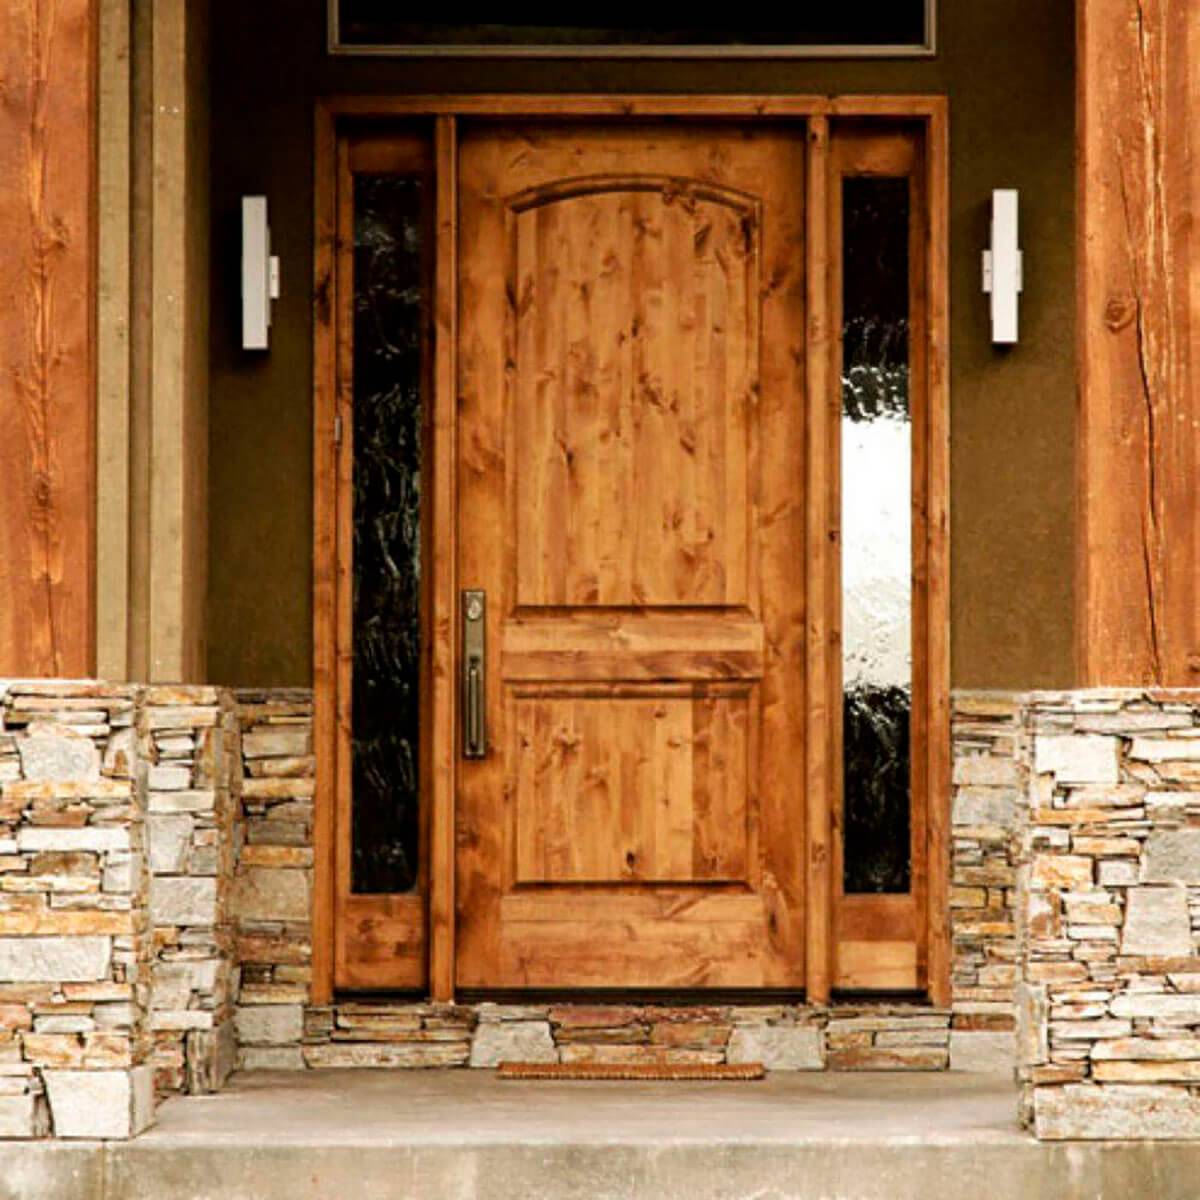 Купить дверь деревянную входную в дом. Деревянная дверь. Дверь входная деревянная. Двери в деревянном доме. Двери в деревенском стиле.